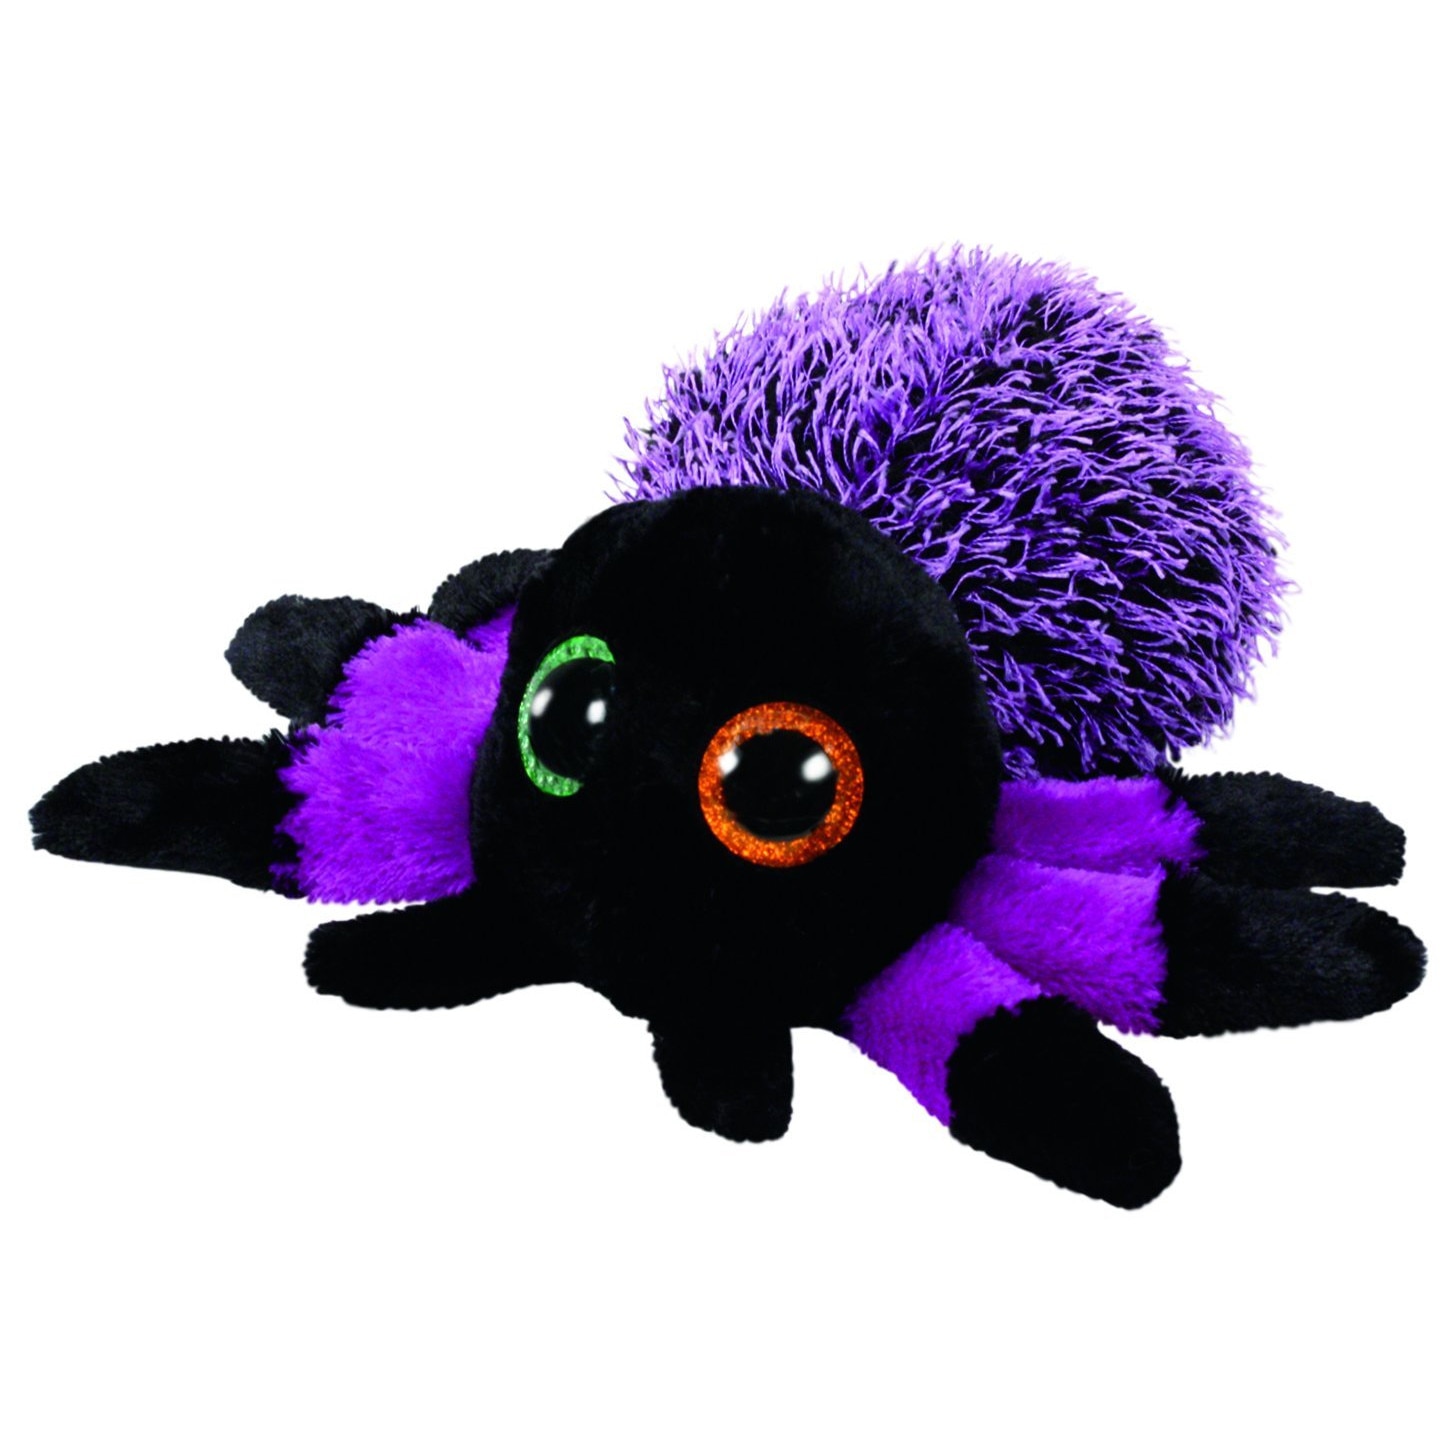 Плюшевый глаз. Beanie Boos Хэллоуин. Мягкая игрушка ty Beanie Boos летучая мышь Leeann 15 см. Мягкая игрушка паучок. Плюшевая игрушка паук.